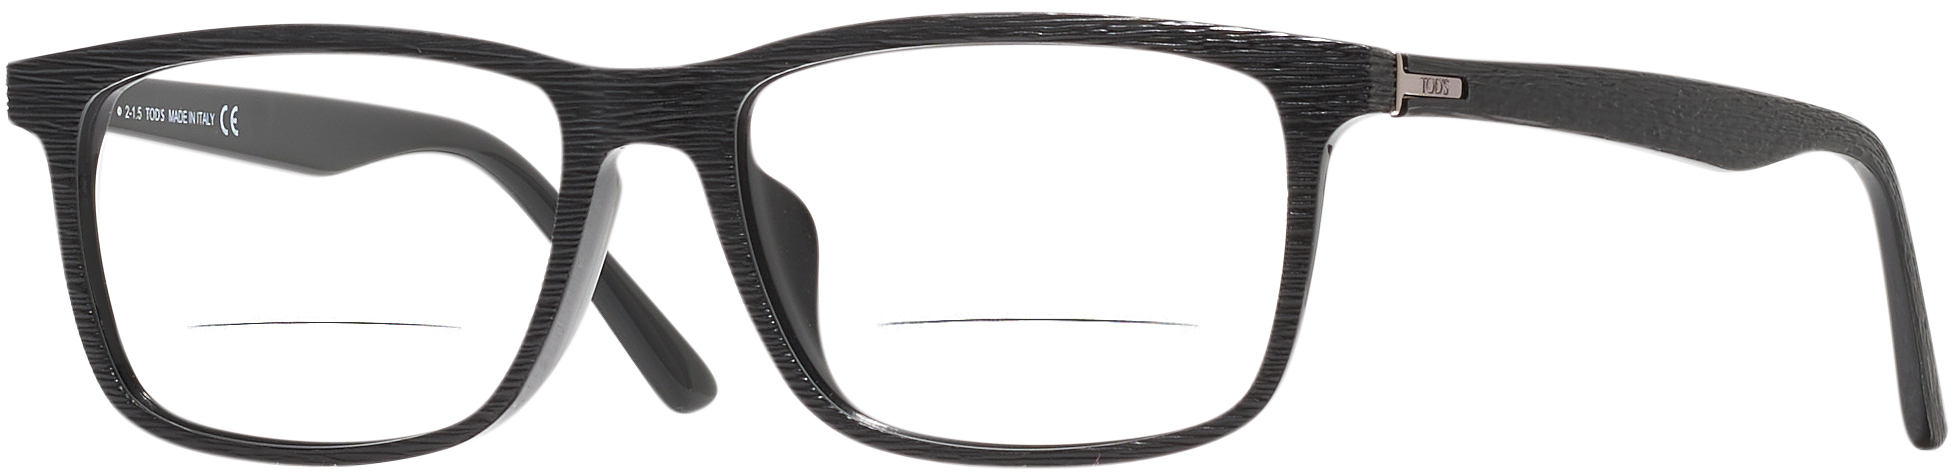 Men's Wide Frame Reading Glasses | ReadingGlasses.com